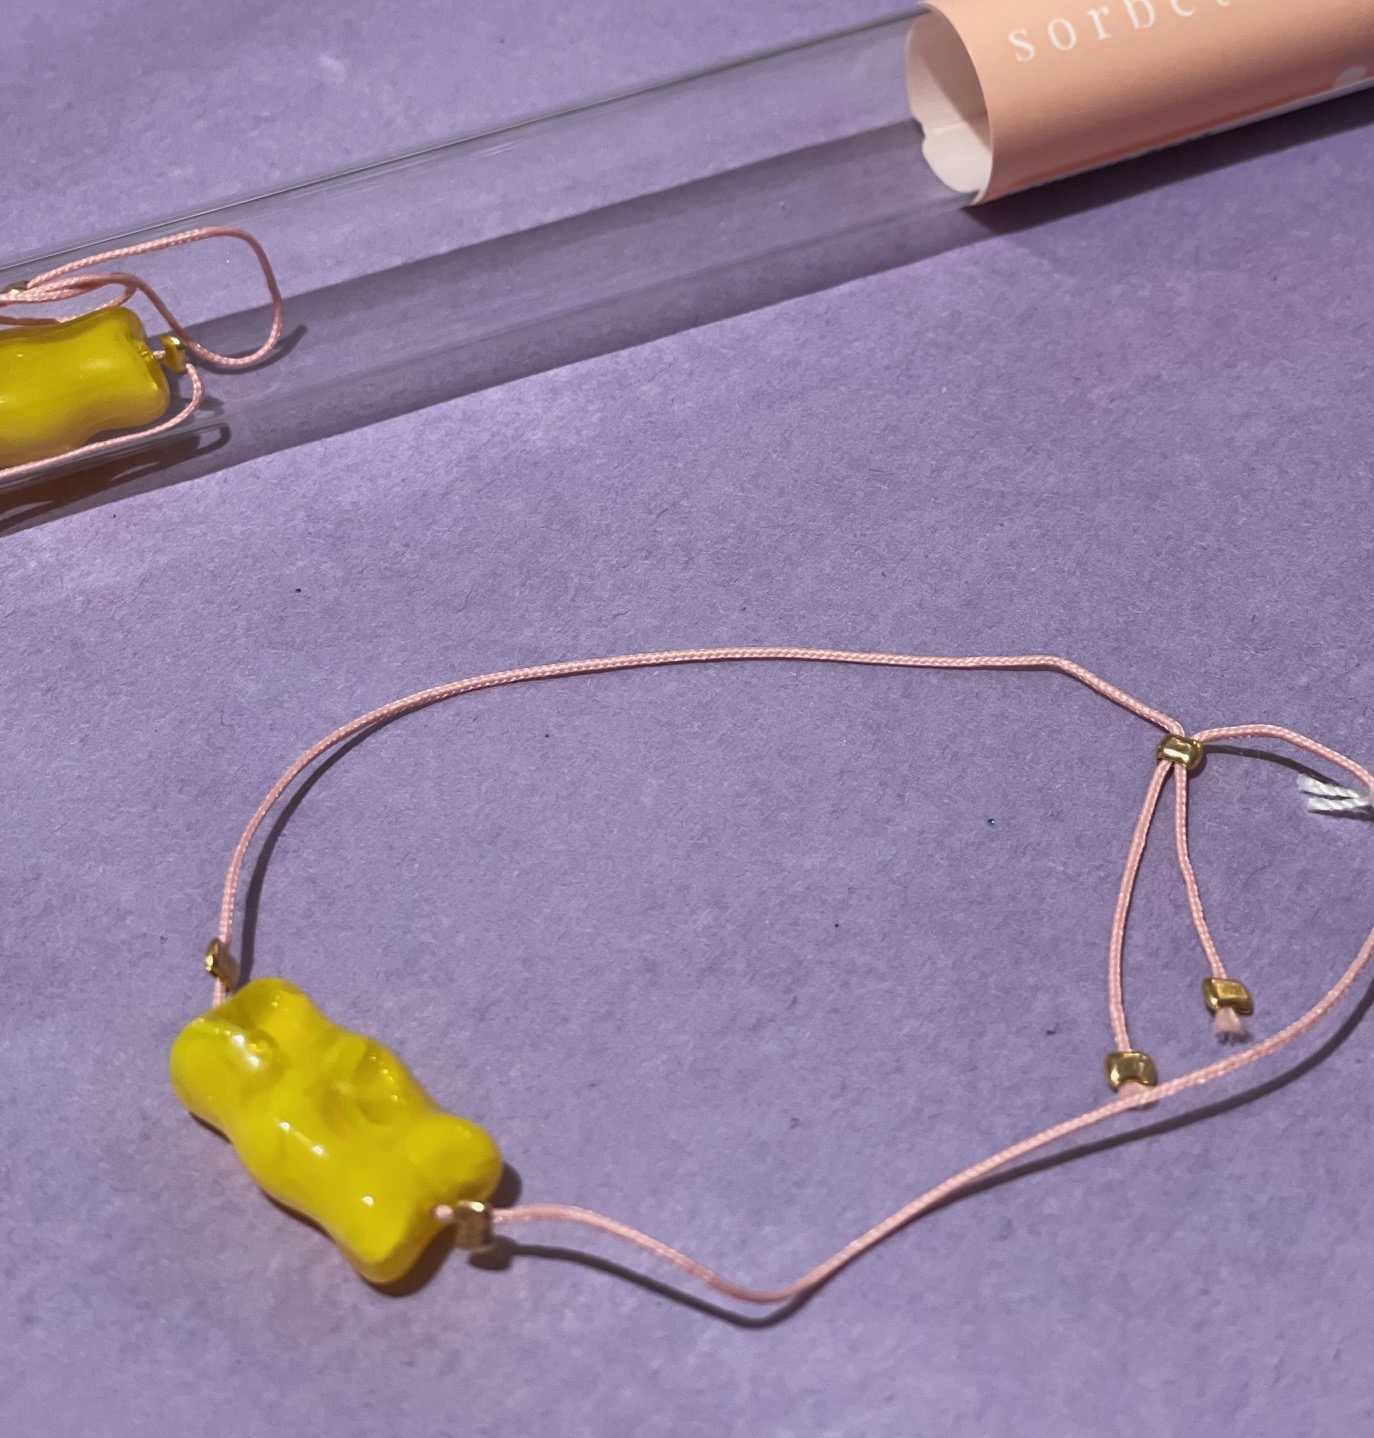 Armband Gummibärchen gelb mit rosa Band, verpackt im Reagenzglas